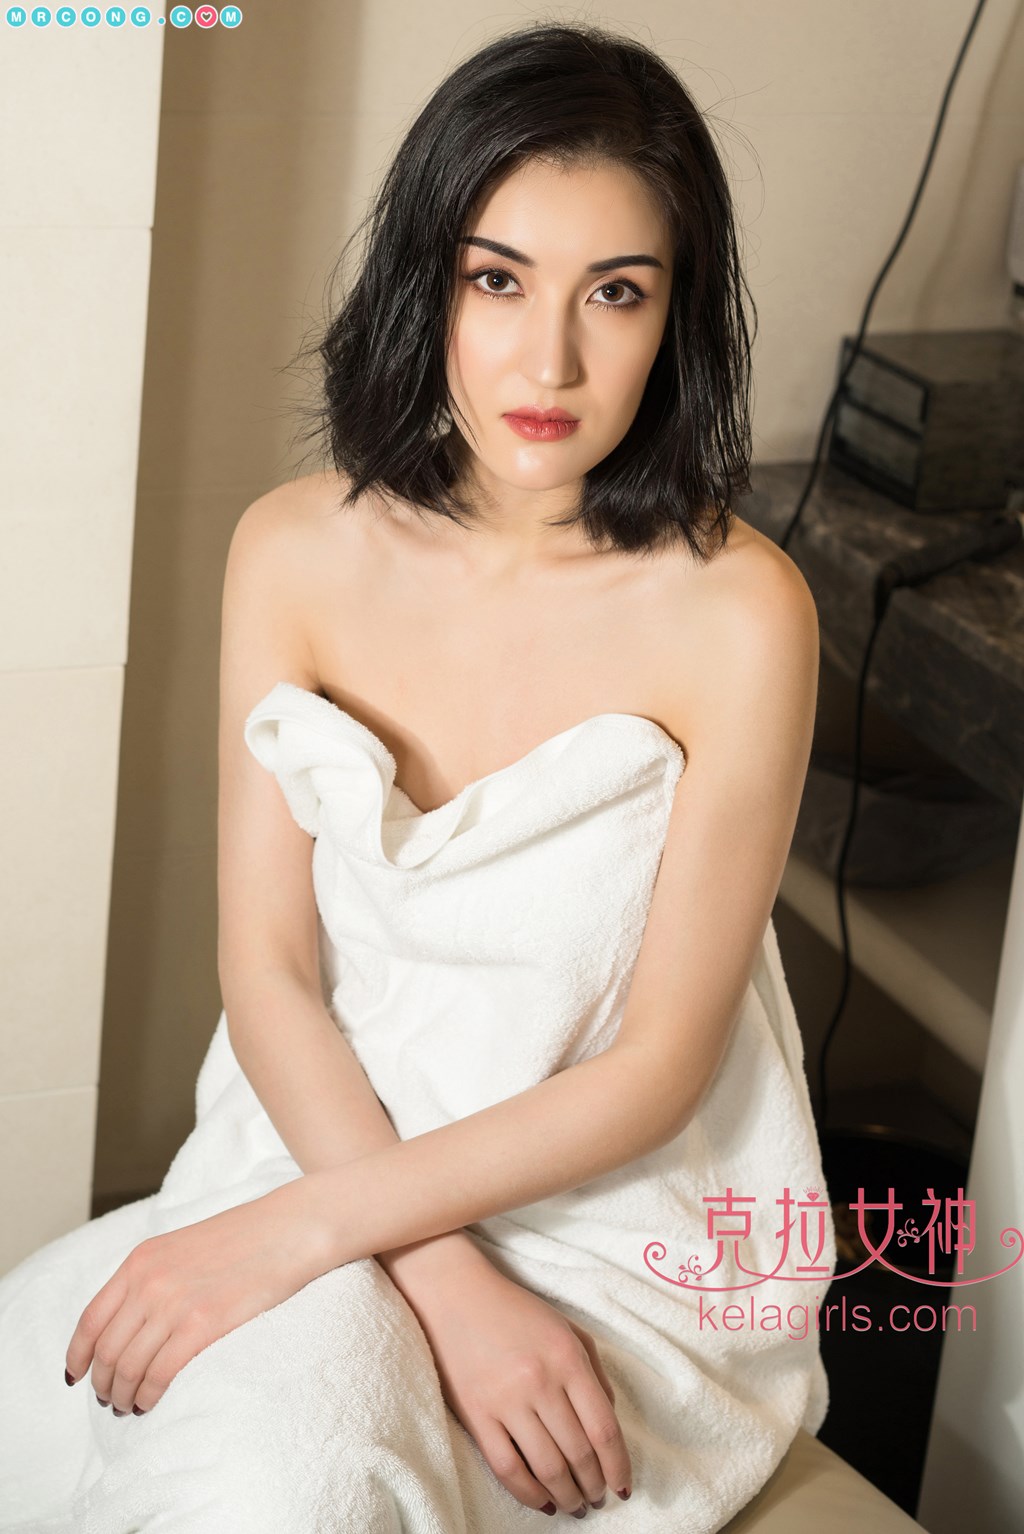 KelaGirls 2018-05-04: Model Rui Sha (瑞莎) (28 photos) photo 2-7